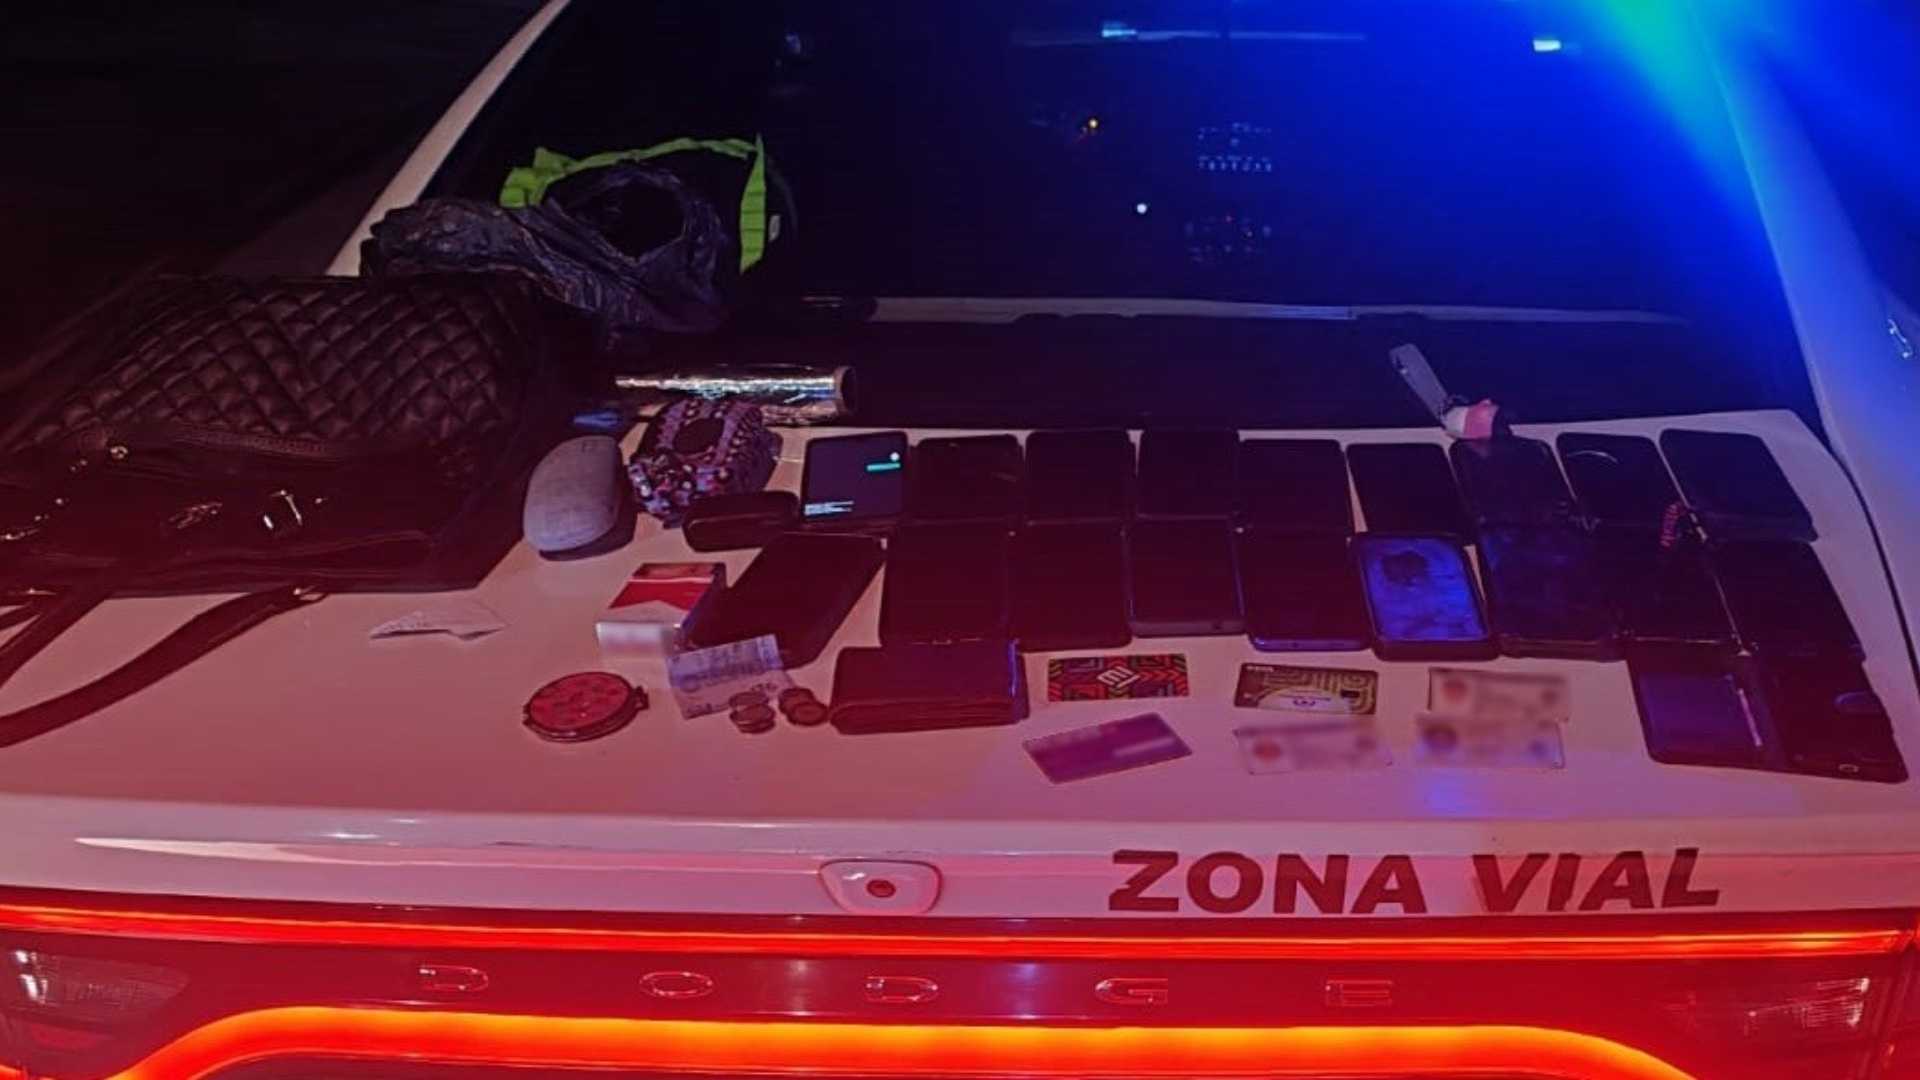 A la persona detenida se le encontraron celulares, carteras y dinero